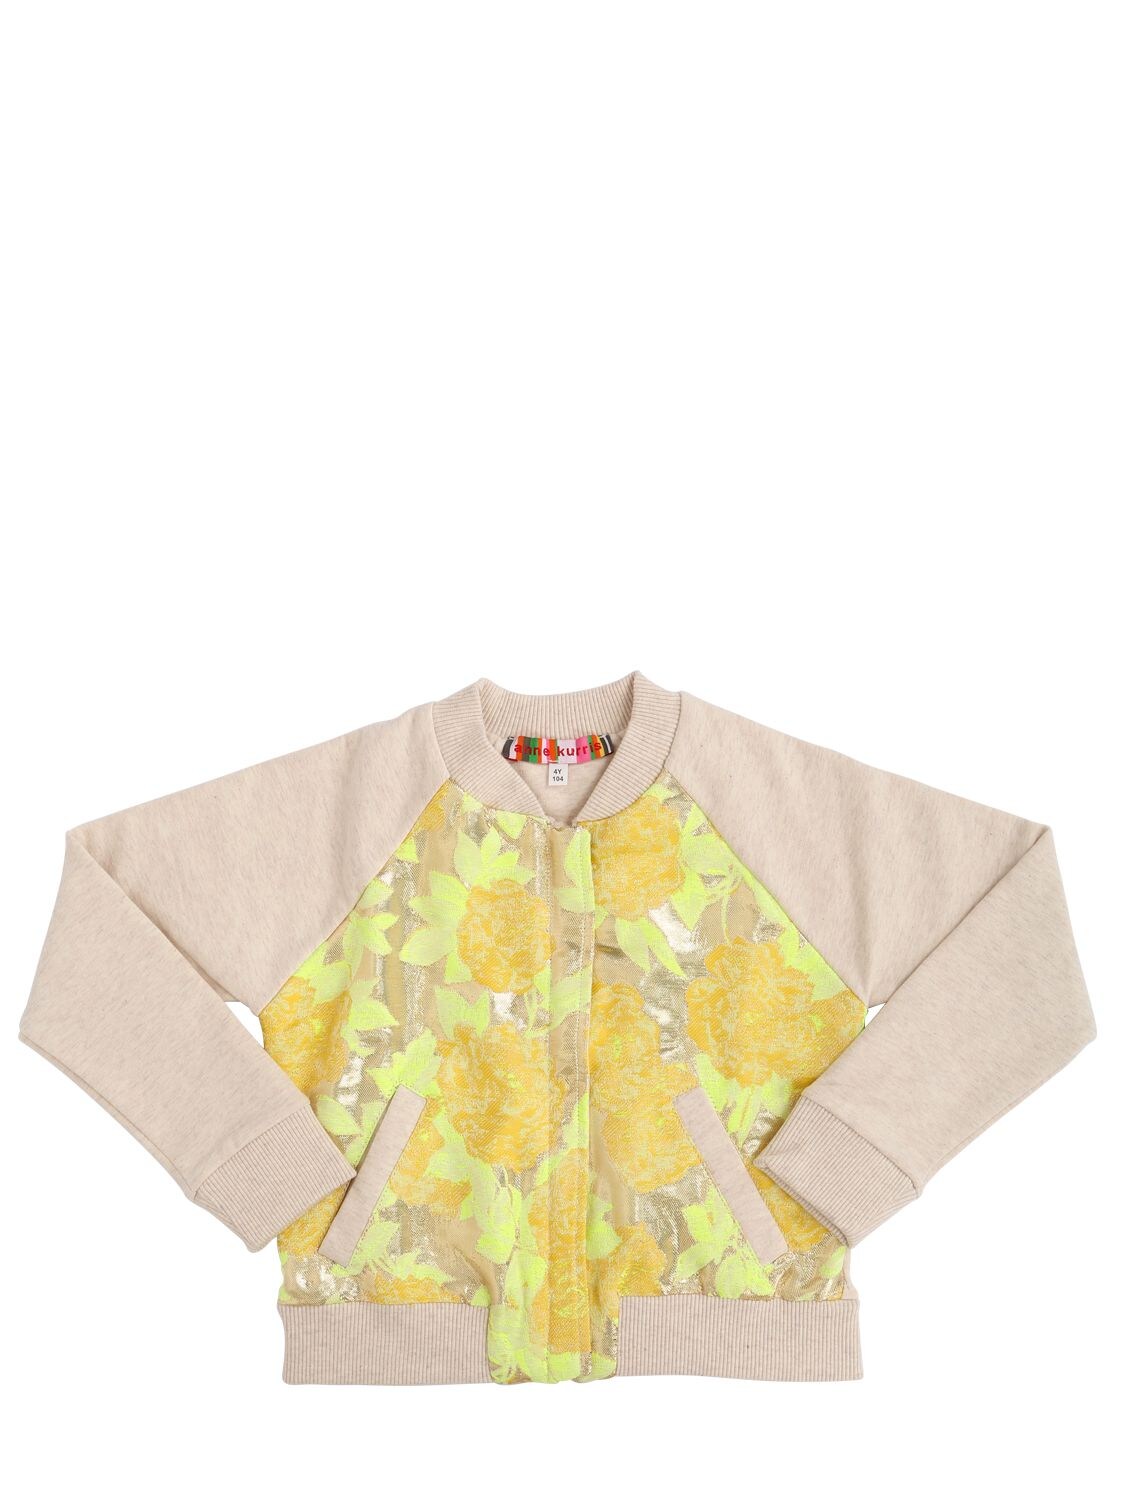 Anne Kurris Kids' Lurex Jacquard & Cotton Jacket In Yellow